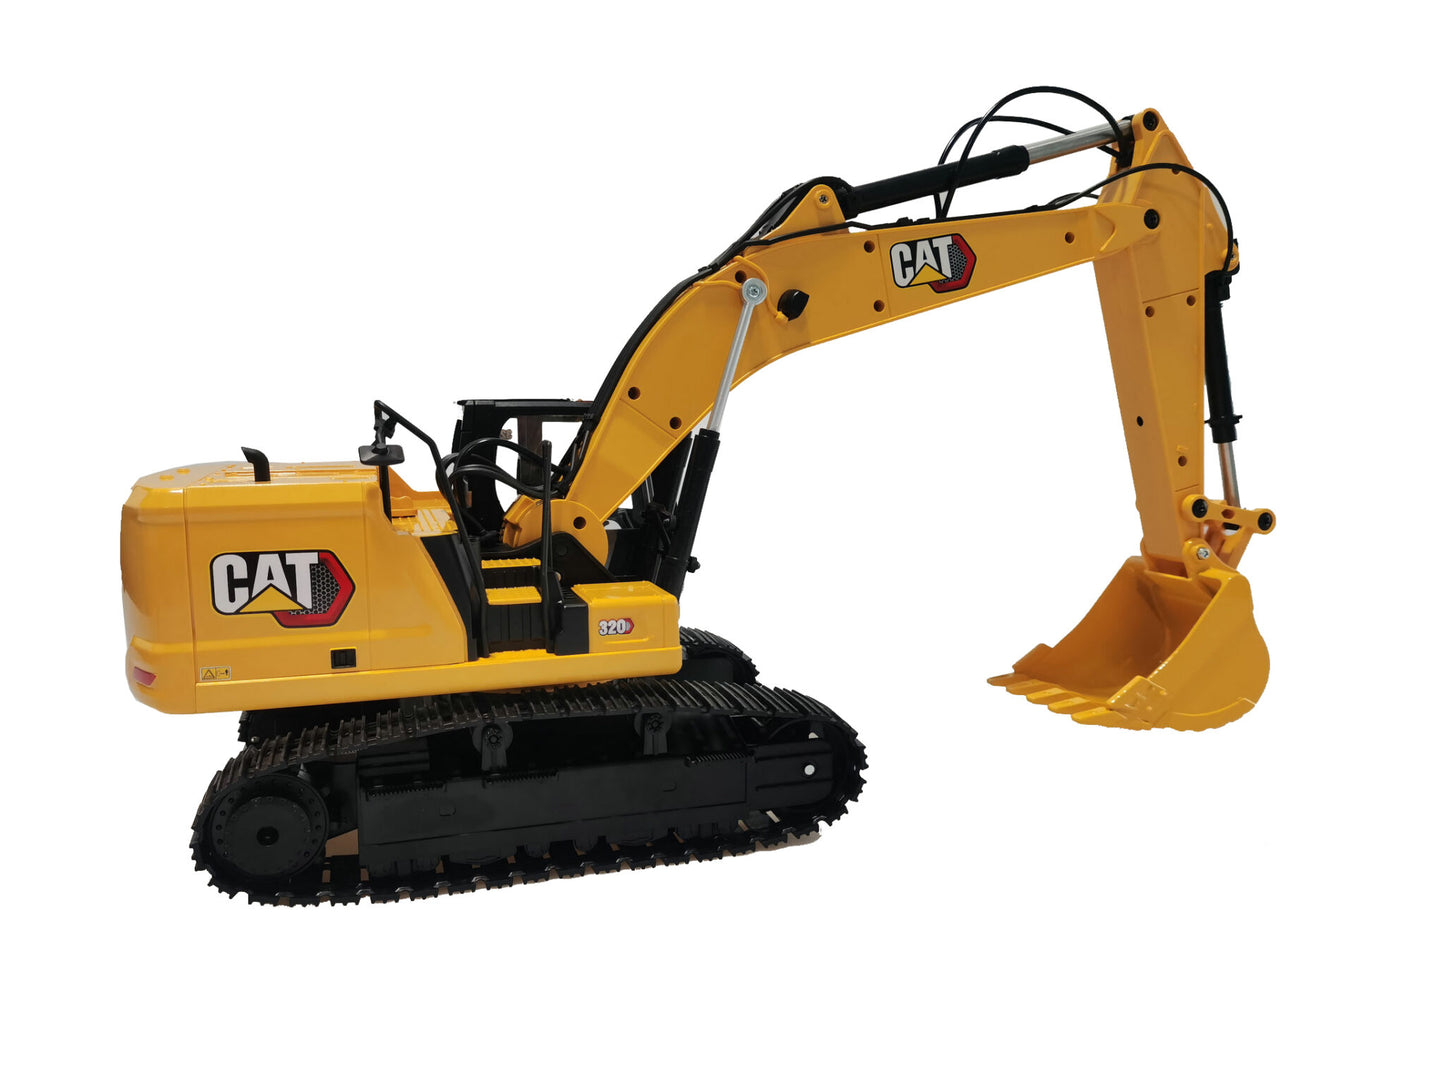 1:16 Cat 320 RC Excavator